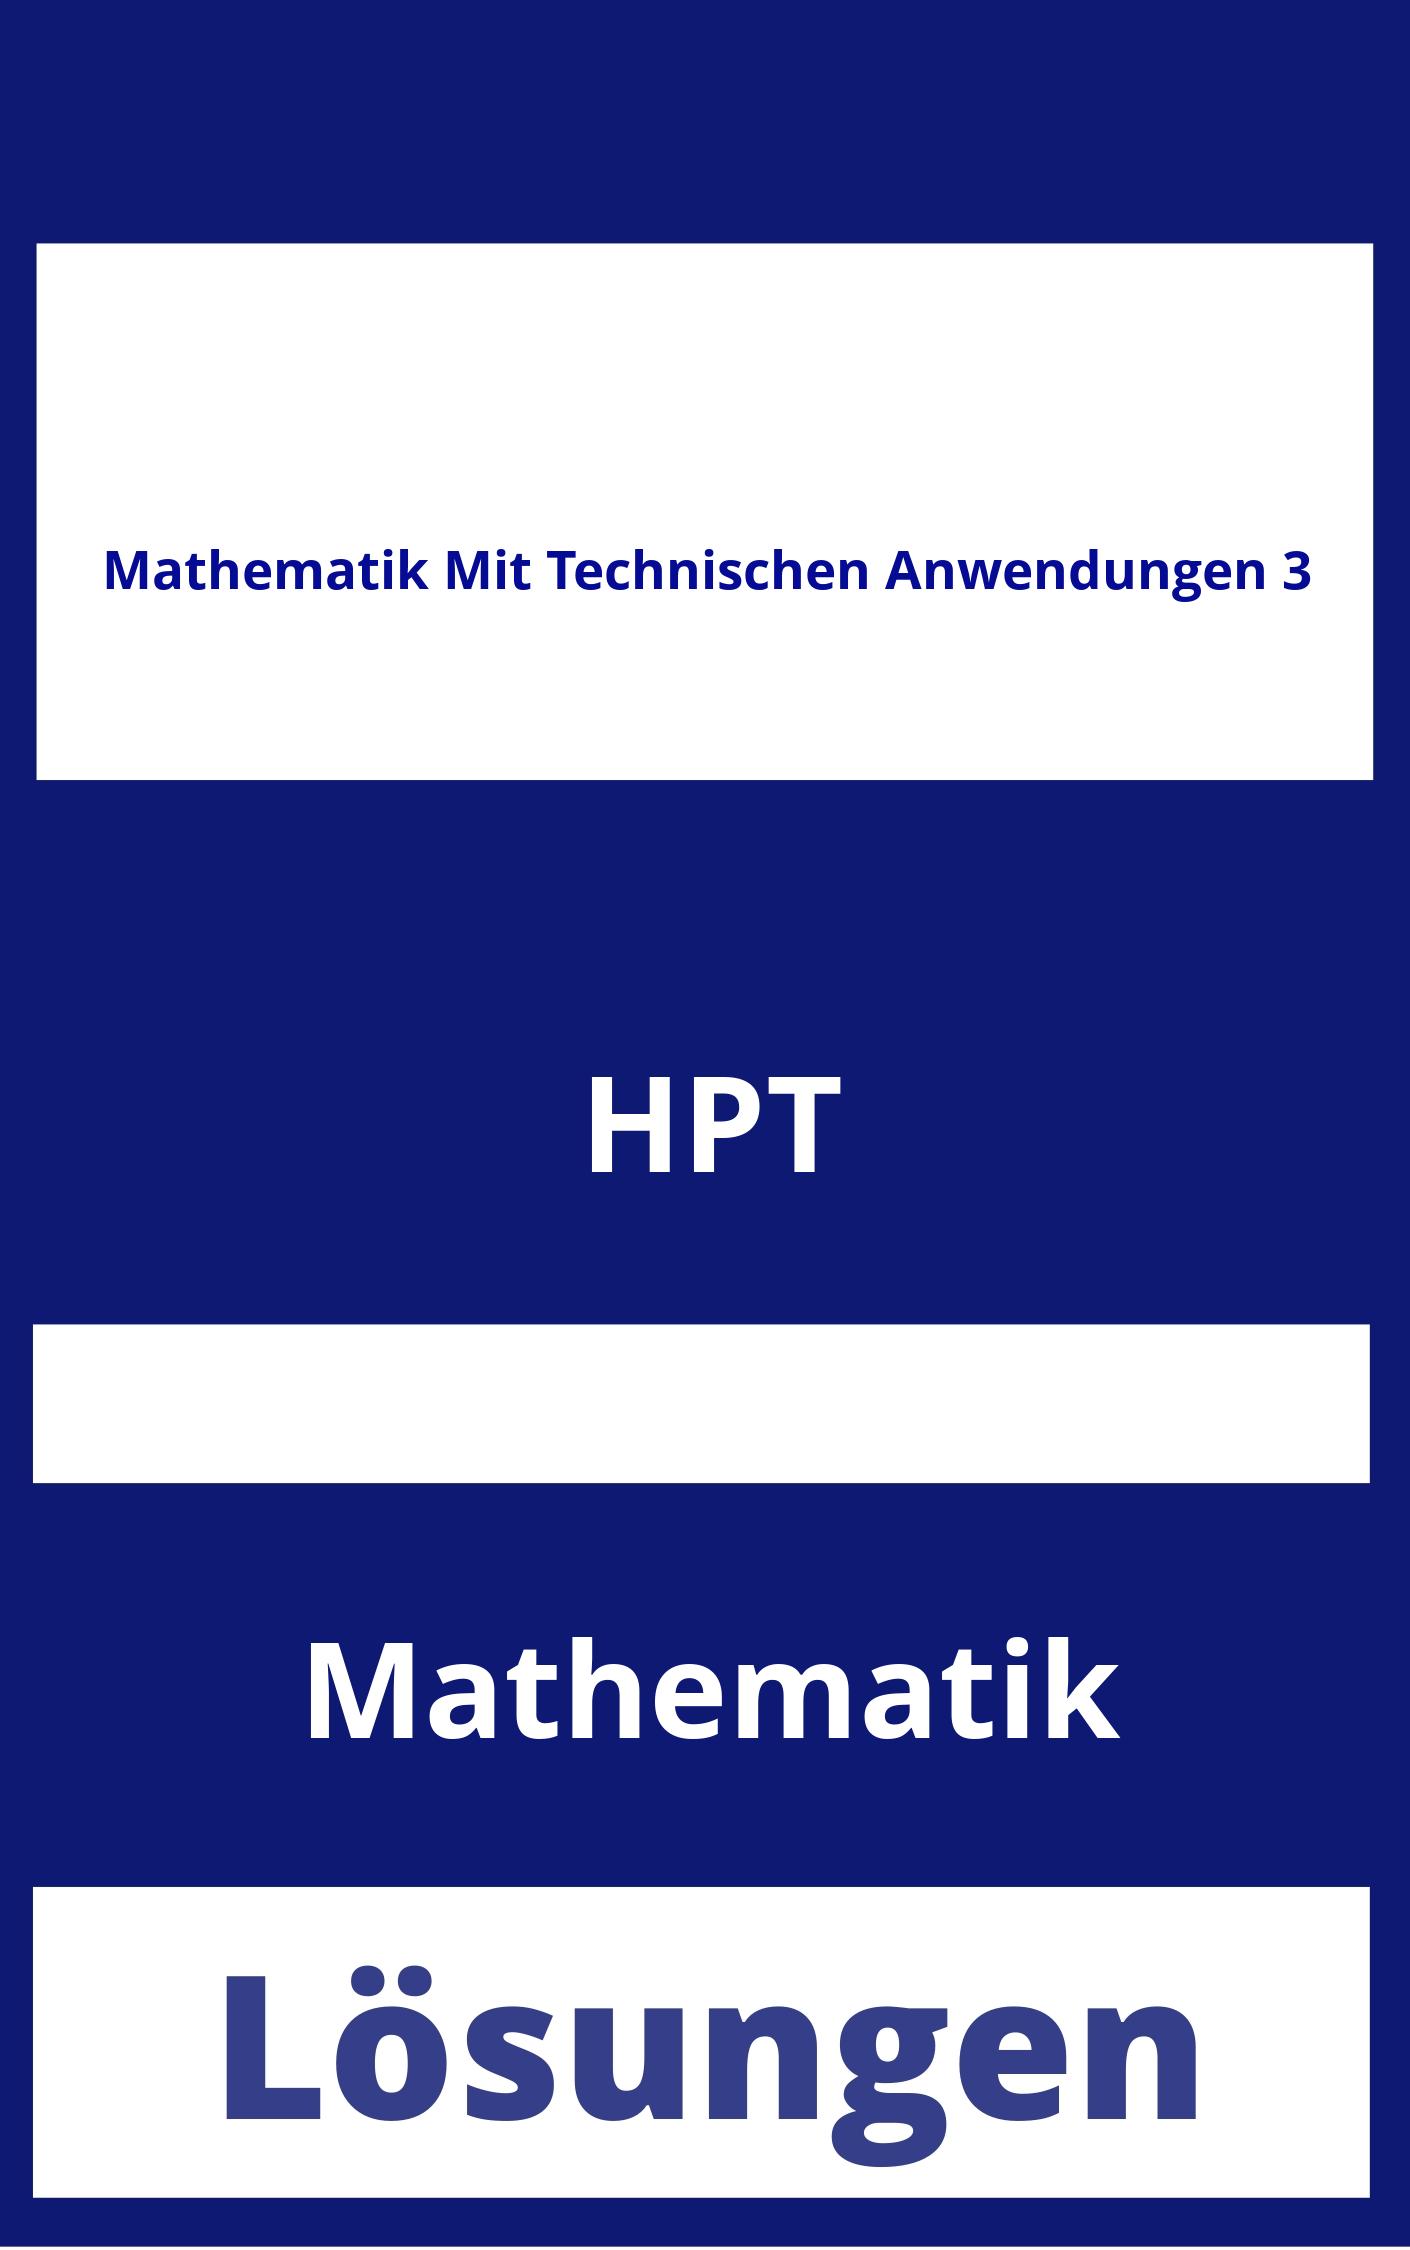 Mathematik Mit Technischen Anwendungen 3 Lösungen PDF